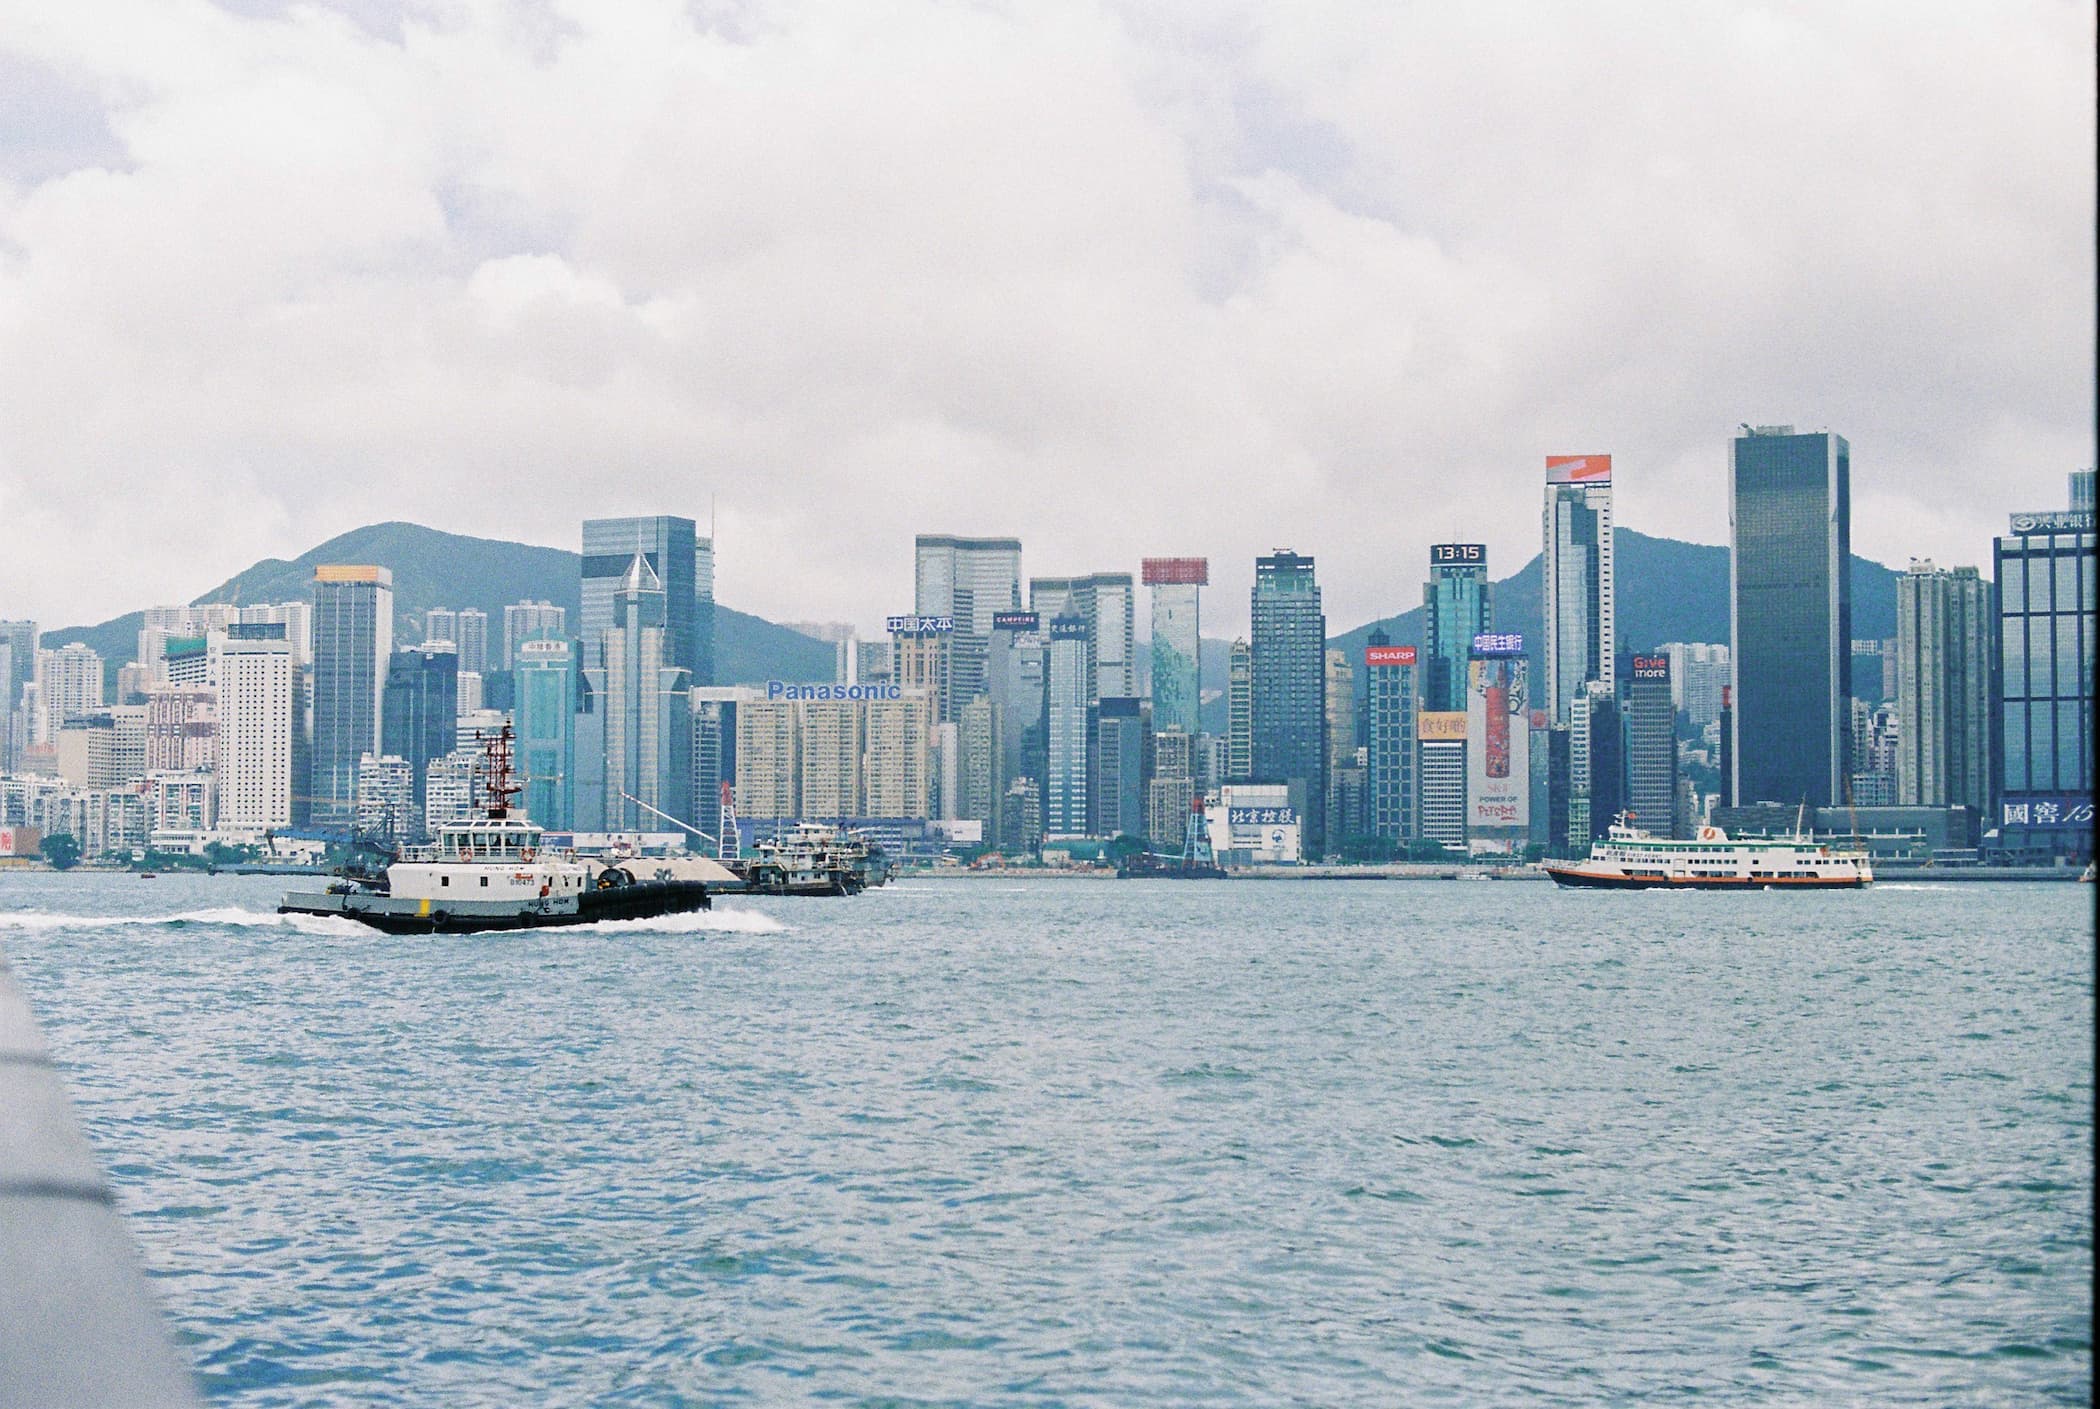 Hong Kong. Star Ferry, buildings.